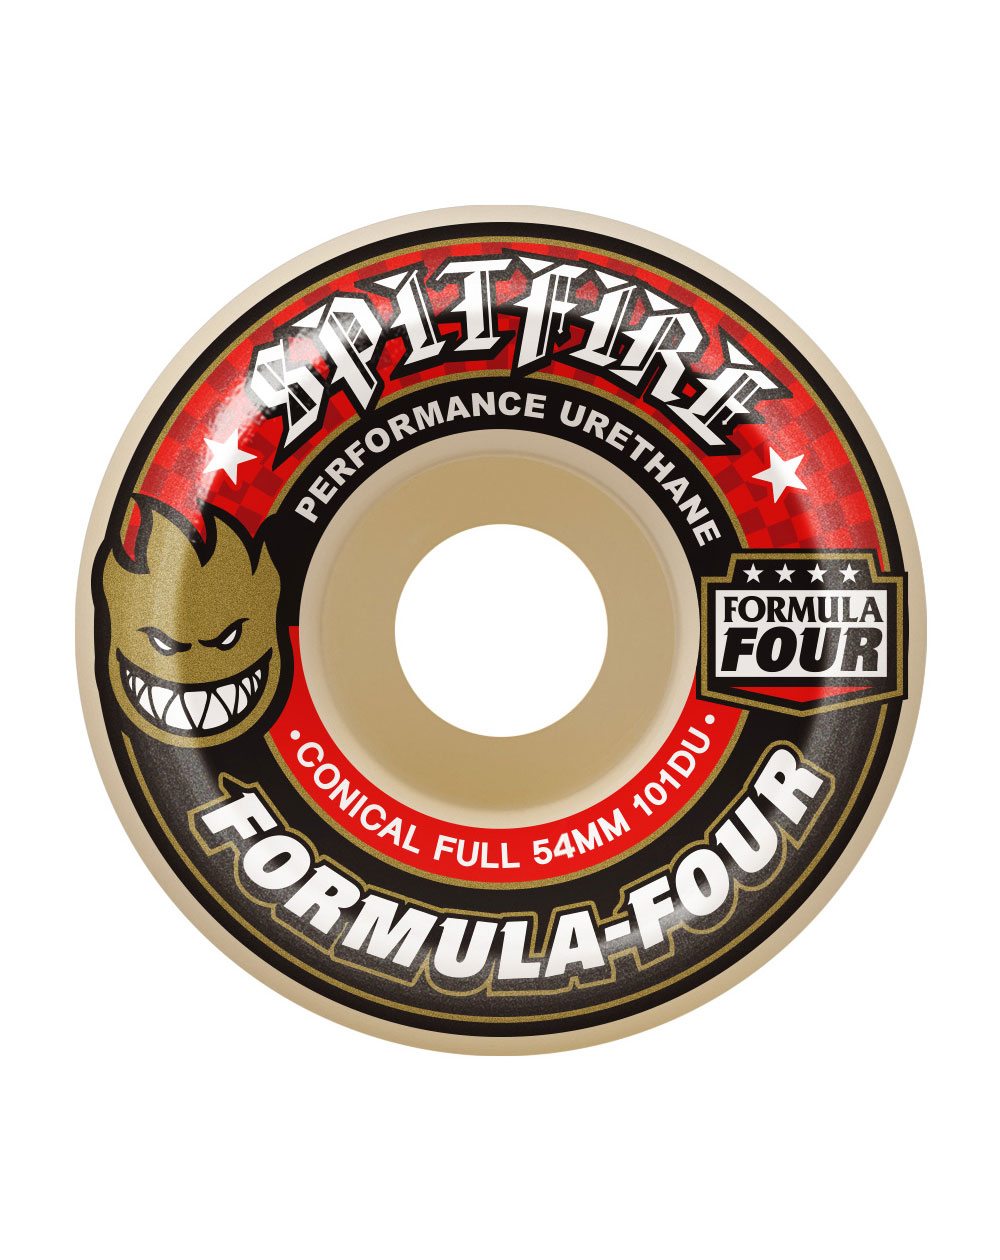 Spitfire Rodas Skate Formula Four Conical Full 54mm 101A 4 peças